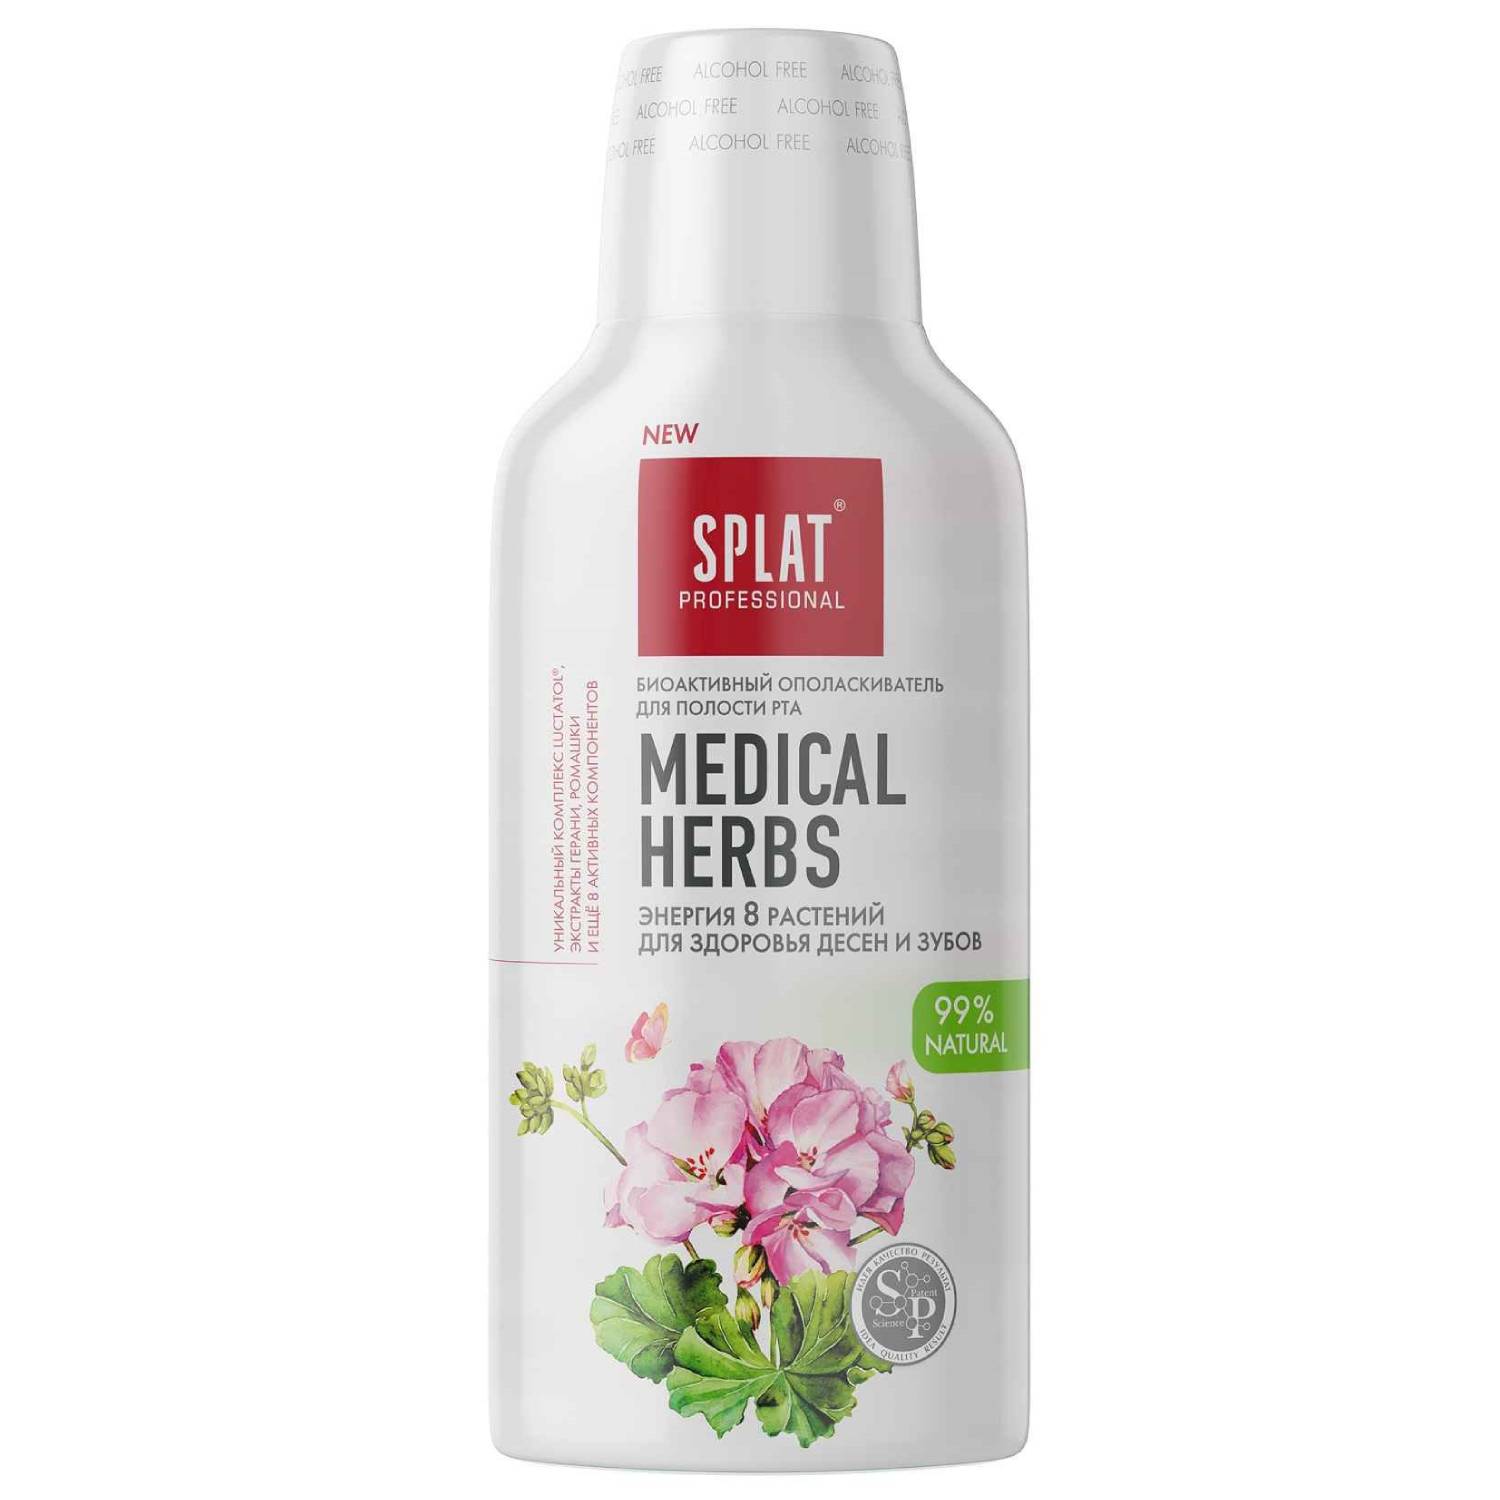 Splat Антибактериальный ополаскиватель для полости рта Medical Herbs Лечебные травы для здоровья зубов и десен, 275 мл (Splat, Professional)